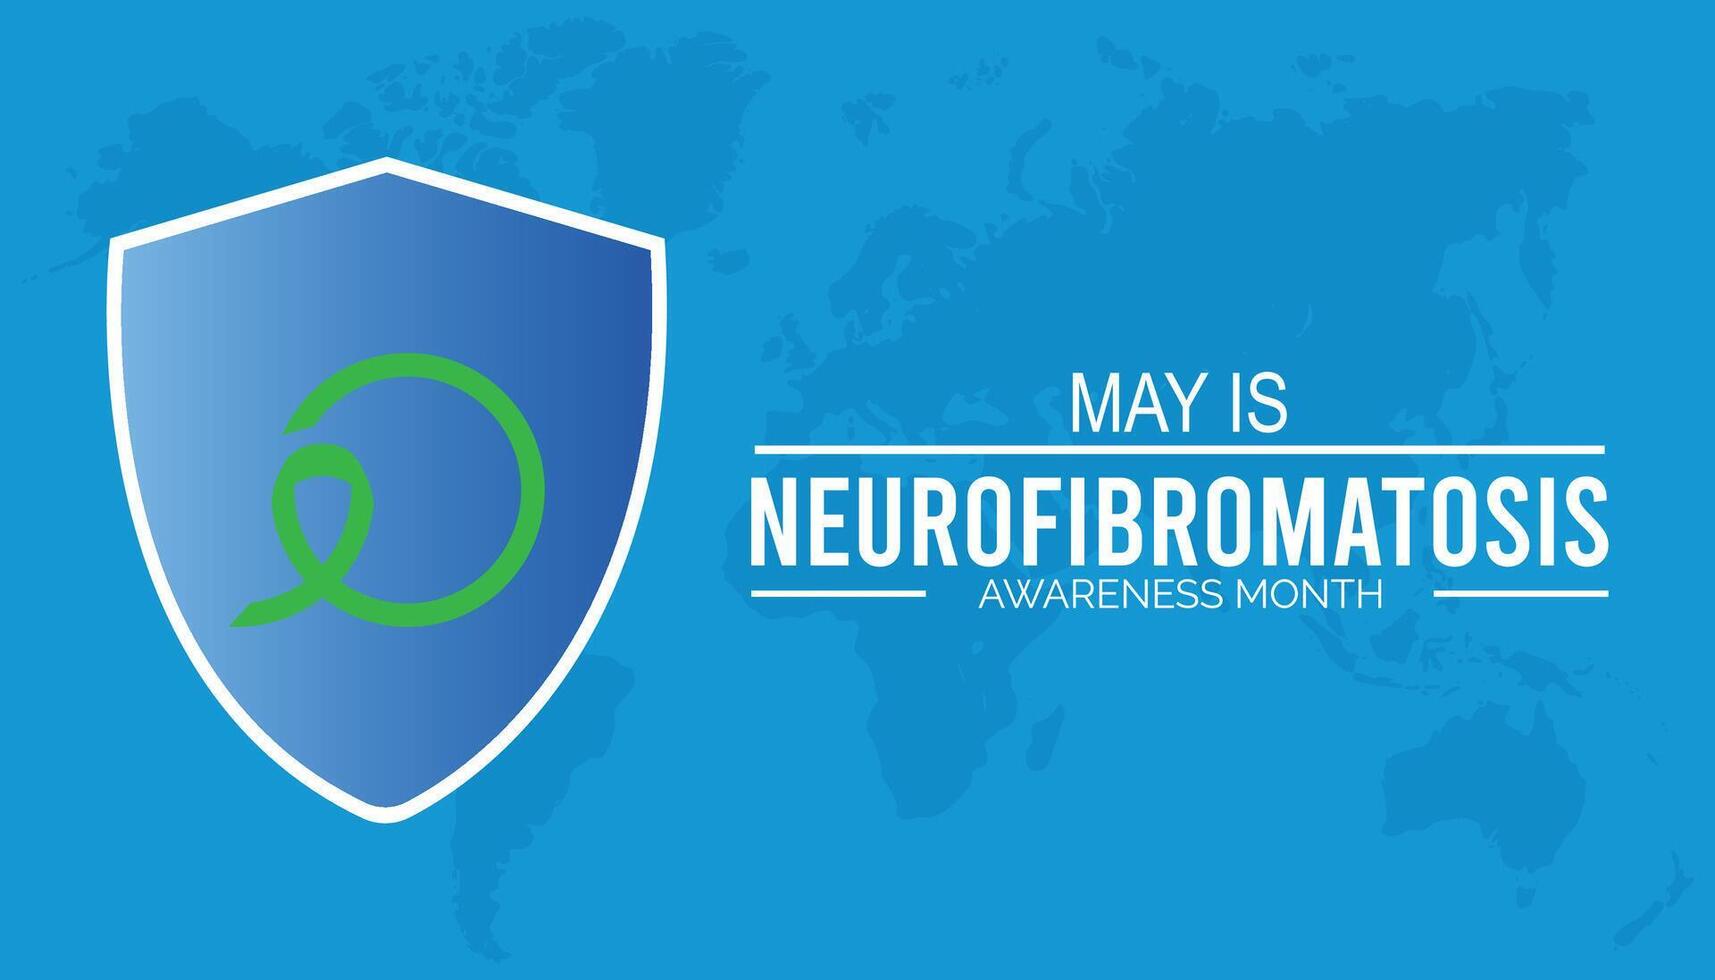 neurofibromatos medvetenhet månad observerats varje år i Maj. mall för bakgrund, baner, kort, affisch med text inskrift. vektor